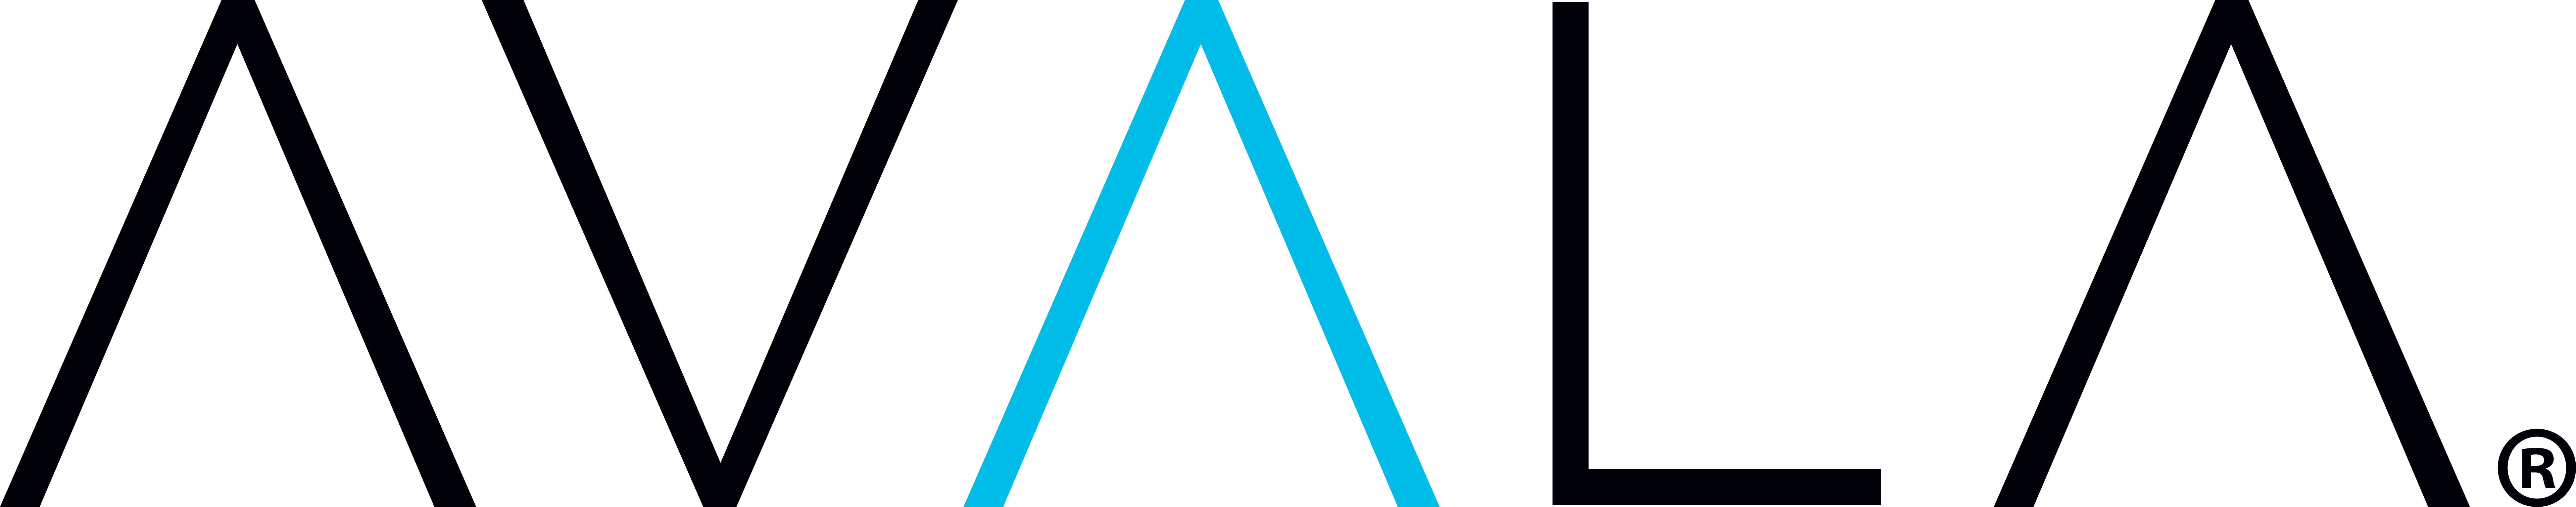 AVALA Company Logo